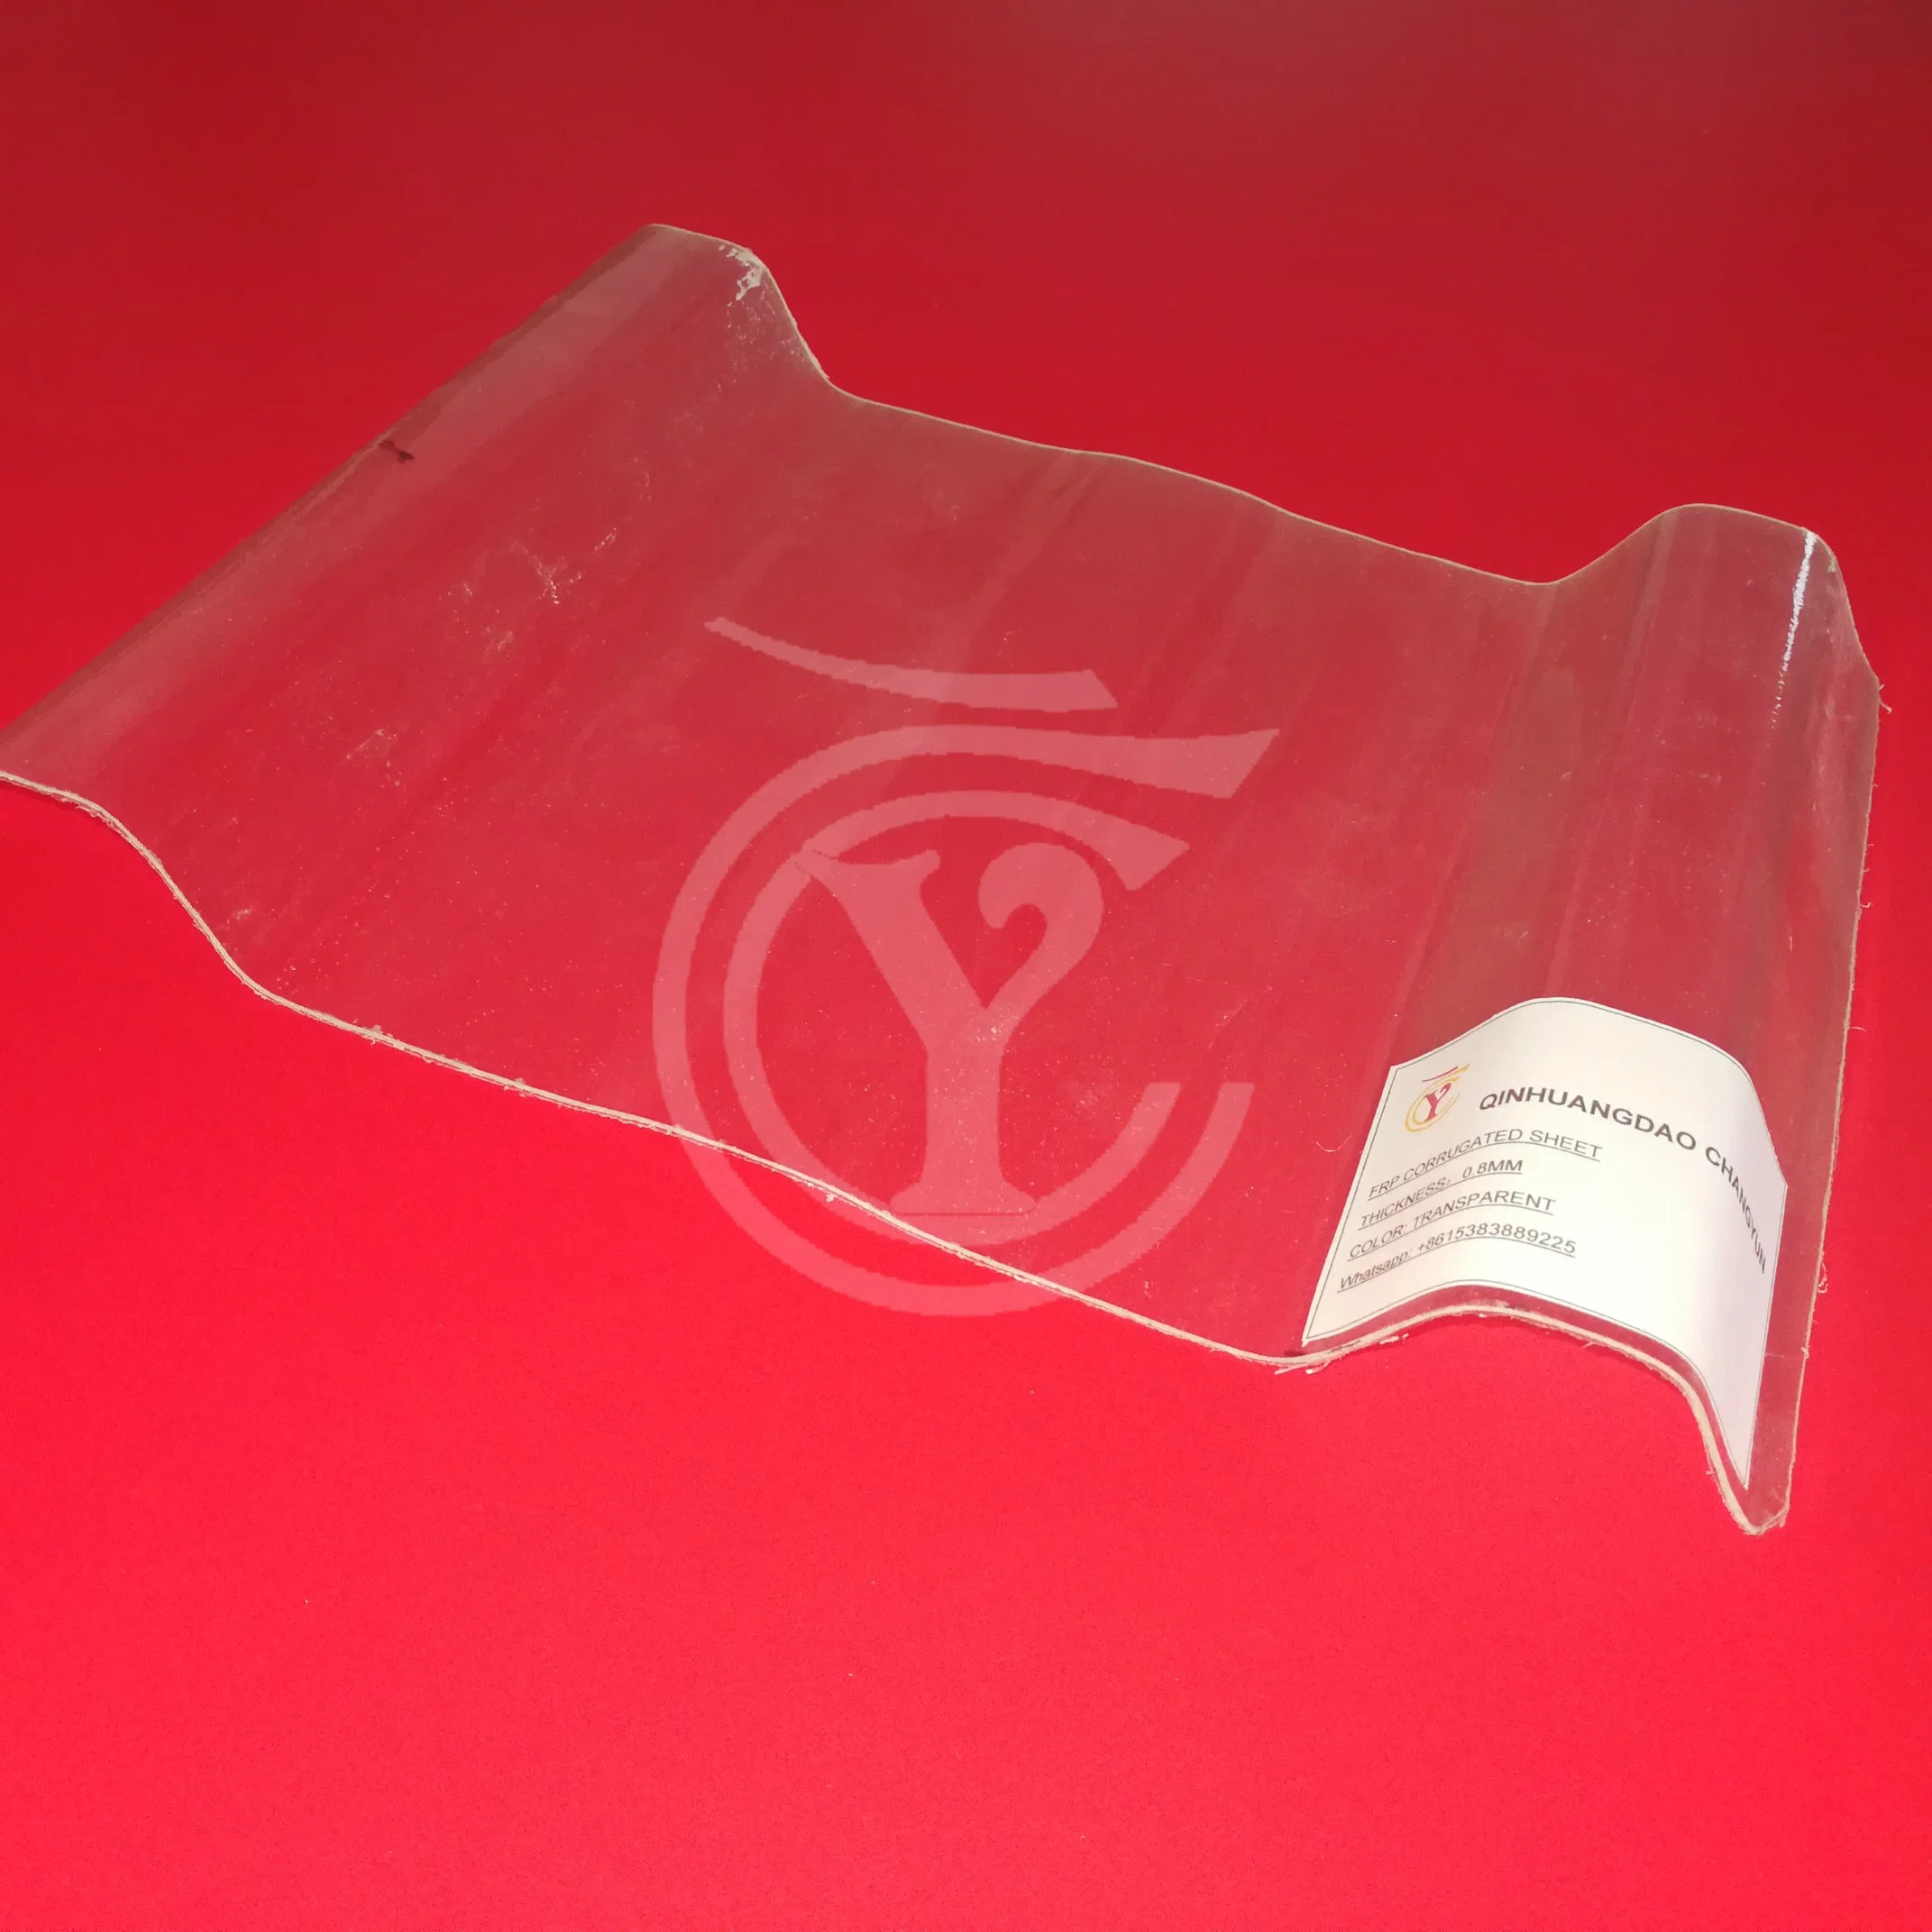 لوحة مقاومة الماء الناعمة المصنوعة من البلاستيك المقوى من الزجاج الليزجي